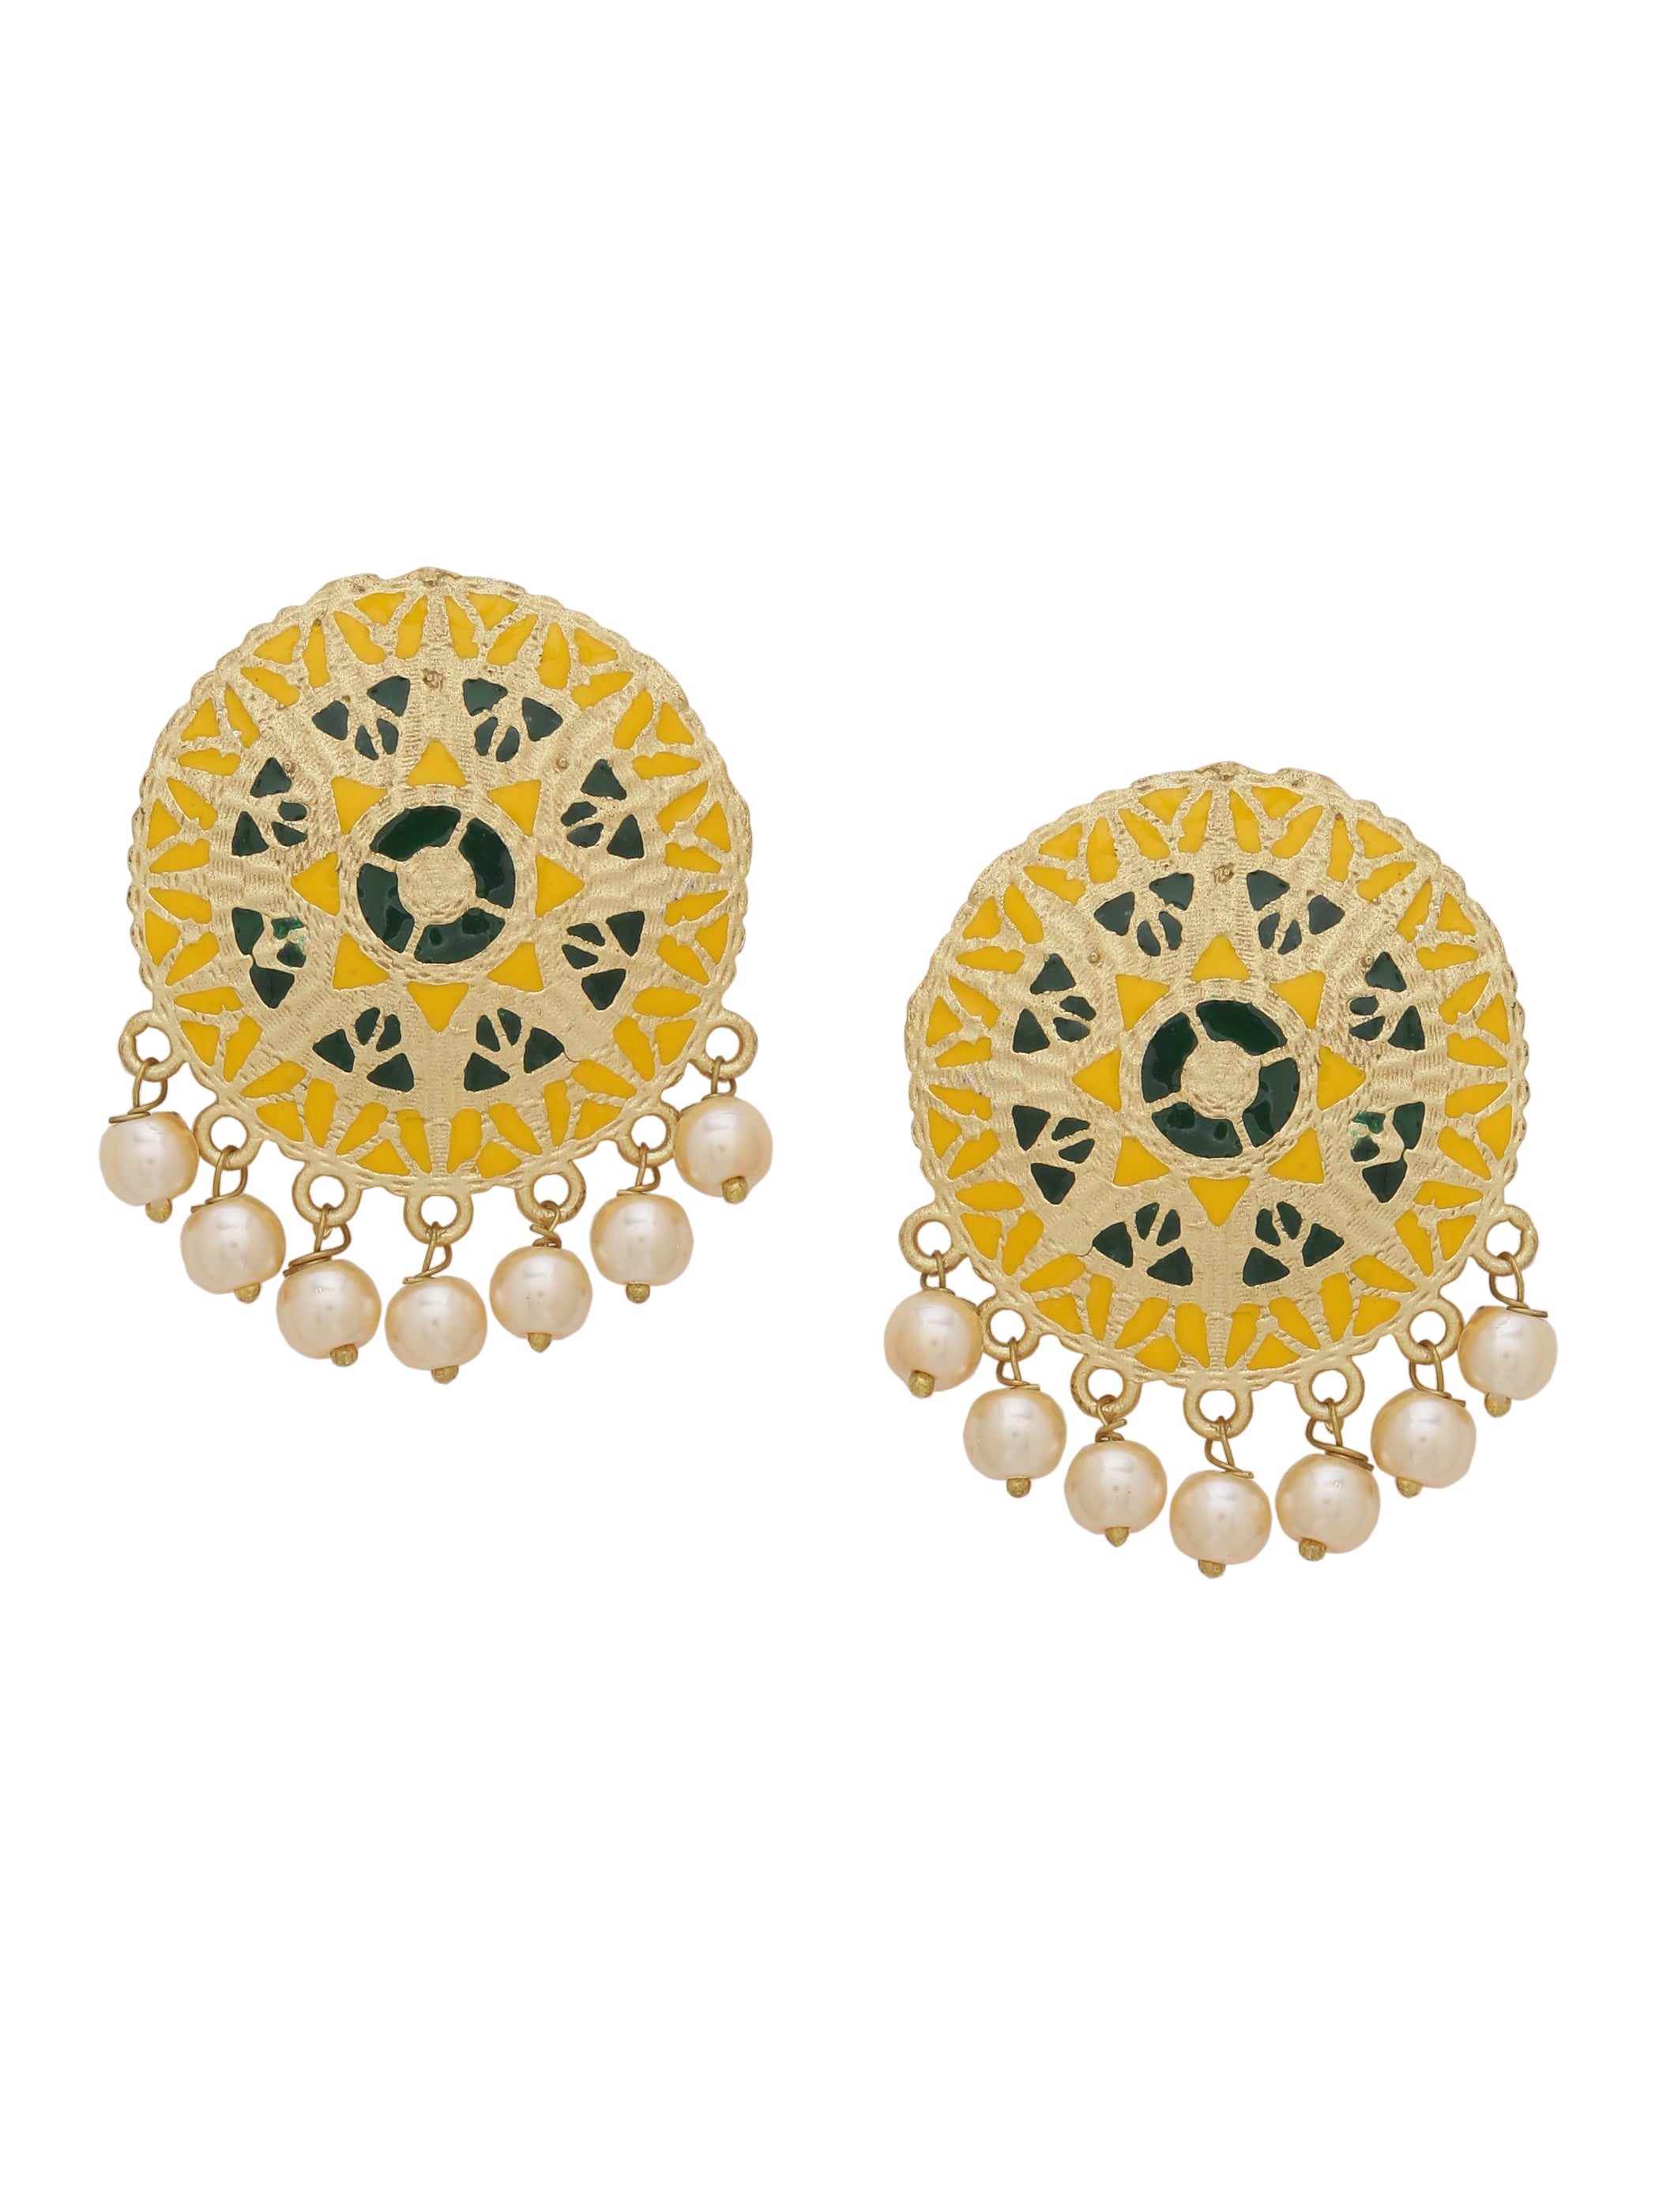 Share 114+ stud earrings for girls gold super hot